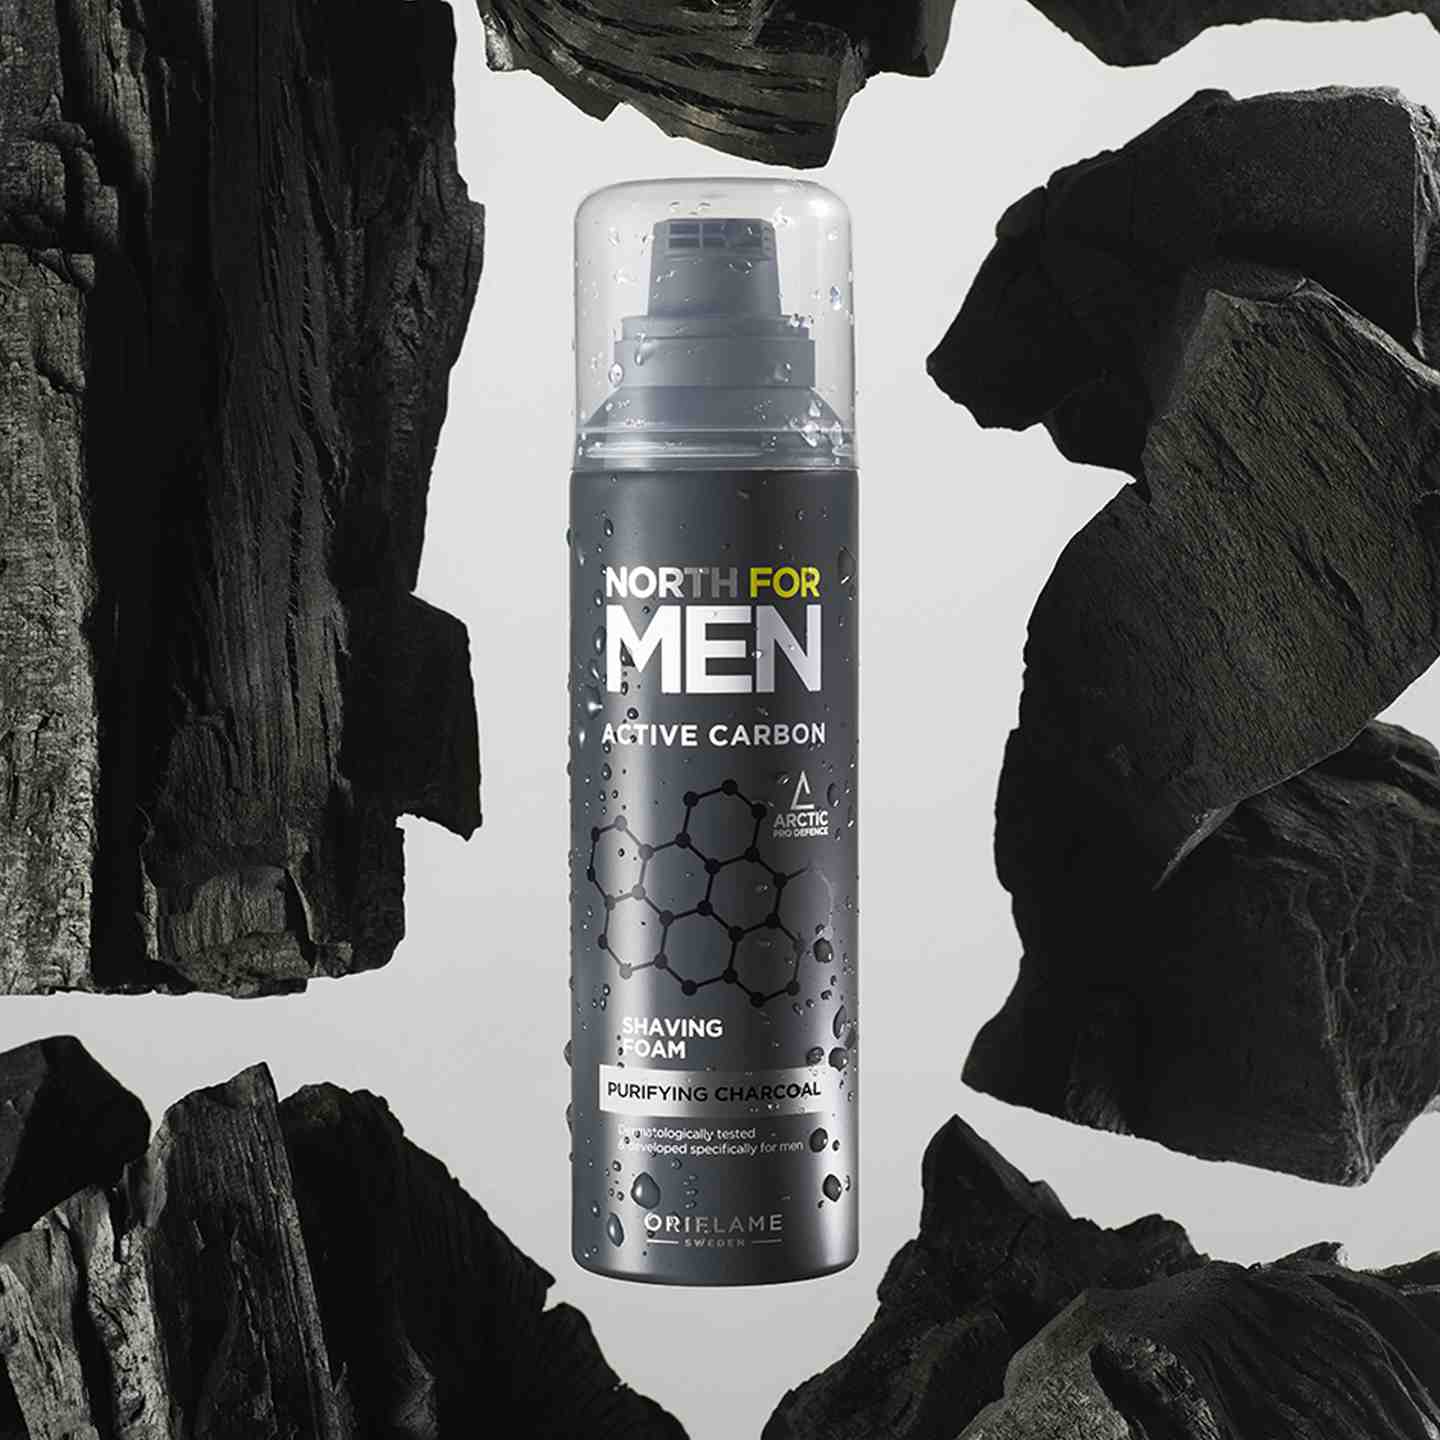 Пена для бритья North for Men Active Carbon (44574) Бритье – Для мужчин | Oriflame Cosmetics